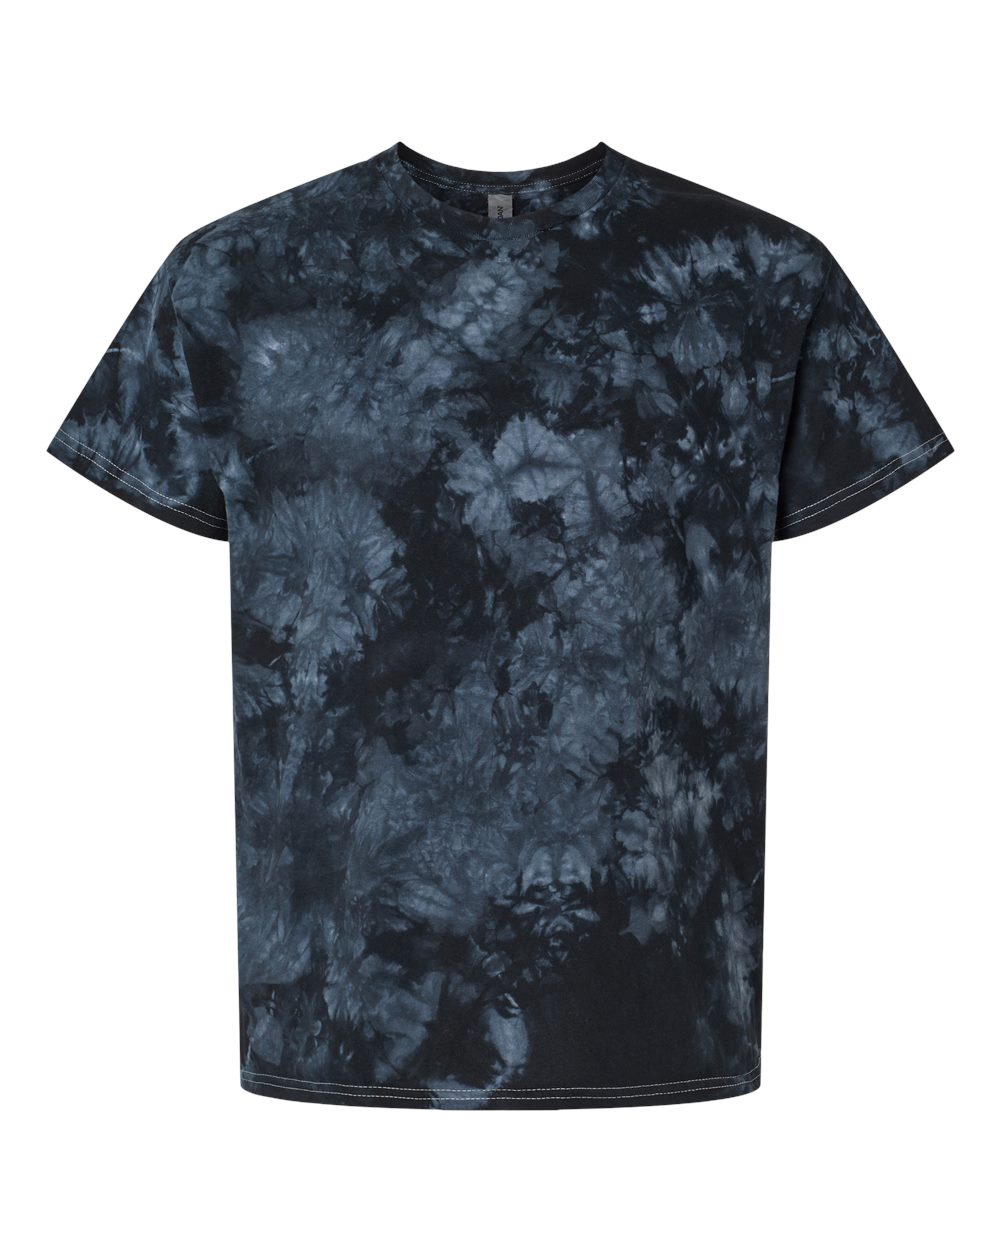 Blue / Black Crystal Wash Tie Dye T-Shirt